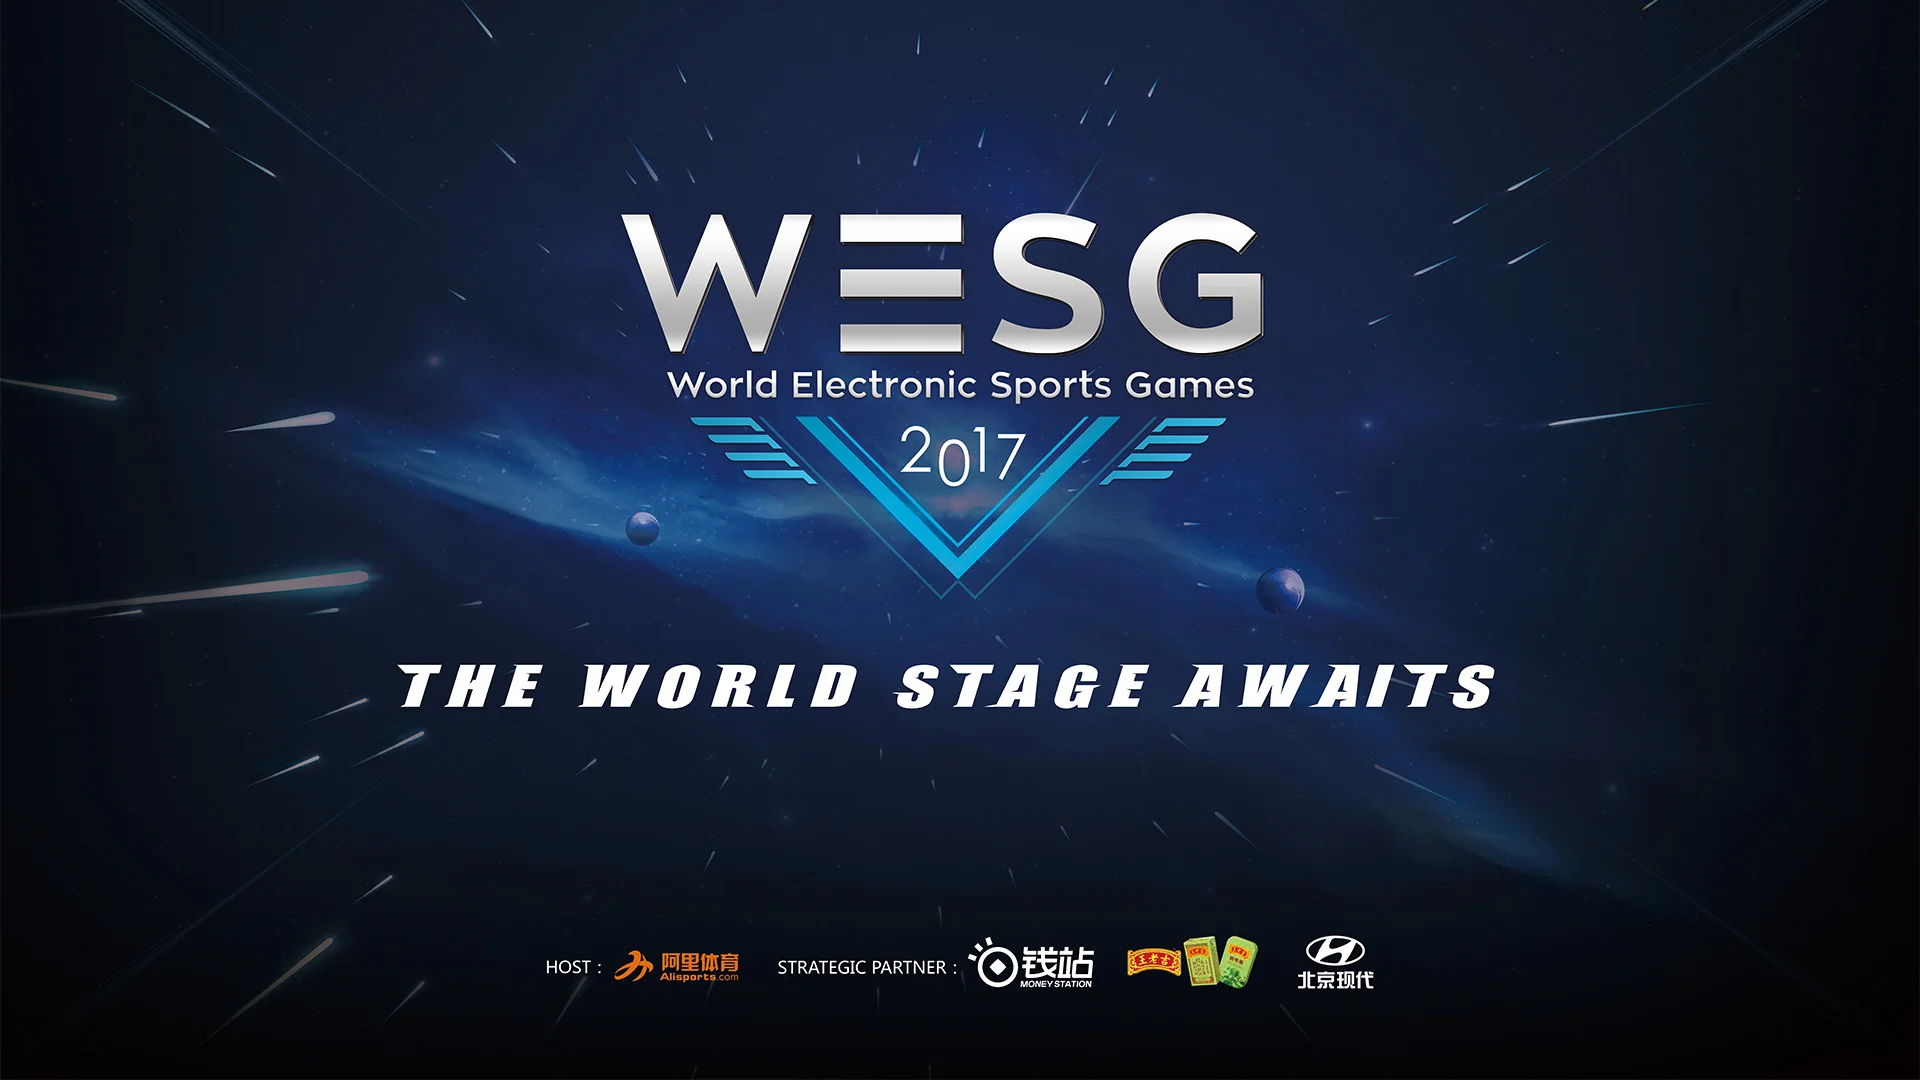 Участники турнира WESG 2017 по CS:GO не получили призовые деньги - фото 1